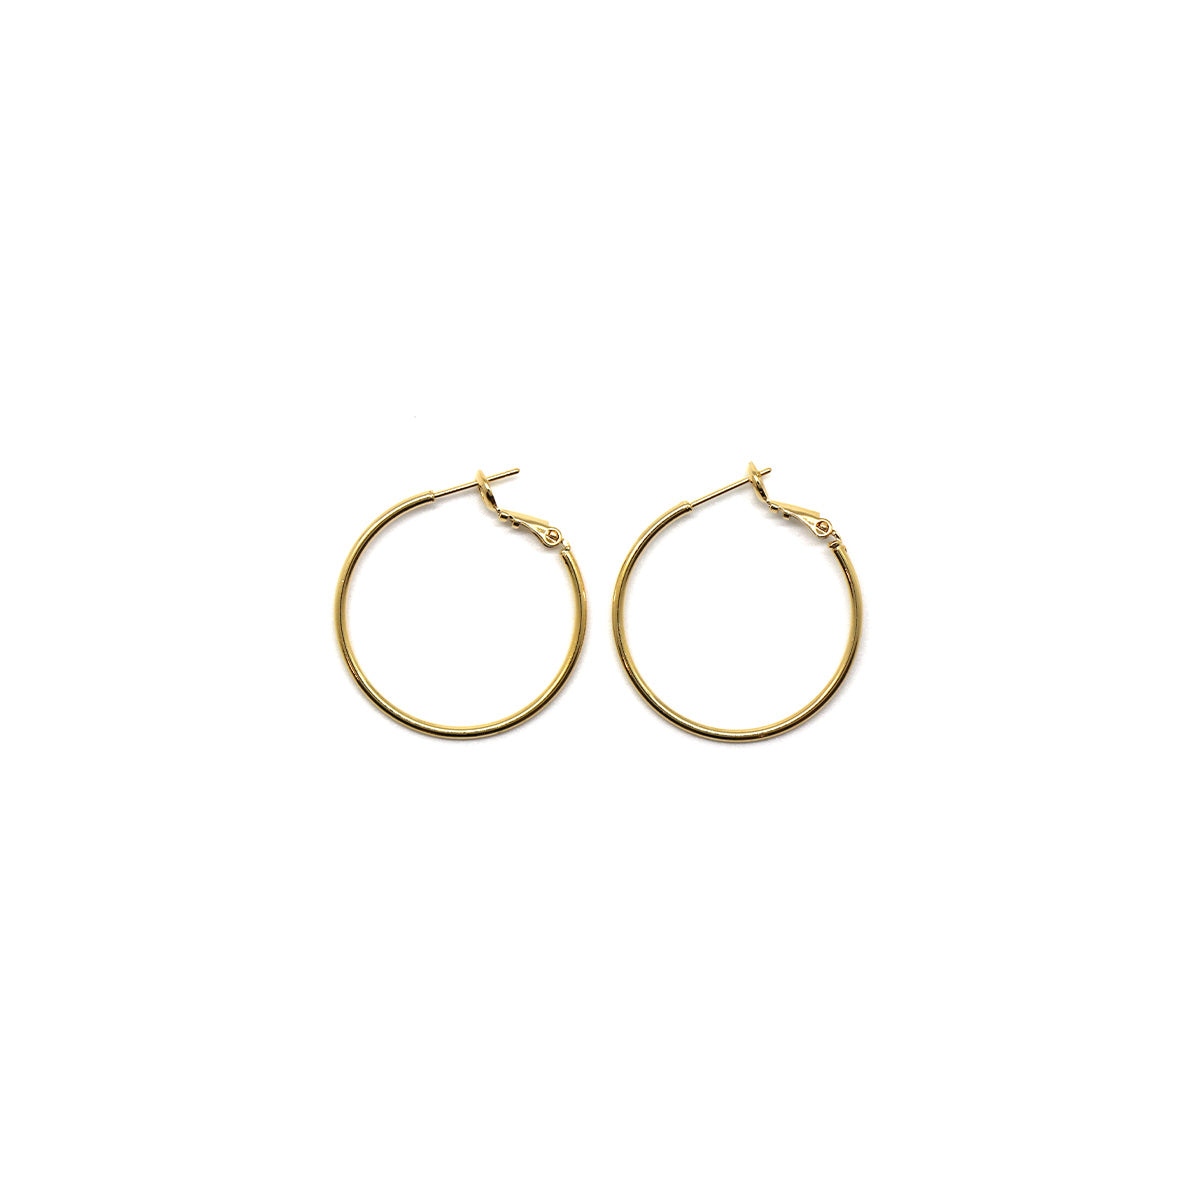 1" Gold hoop earrings Beba Hoop